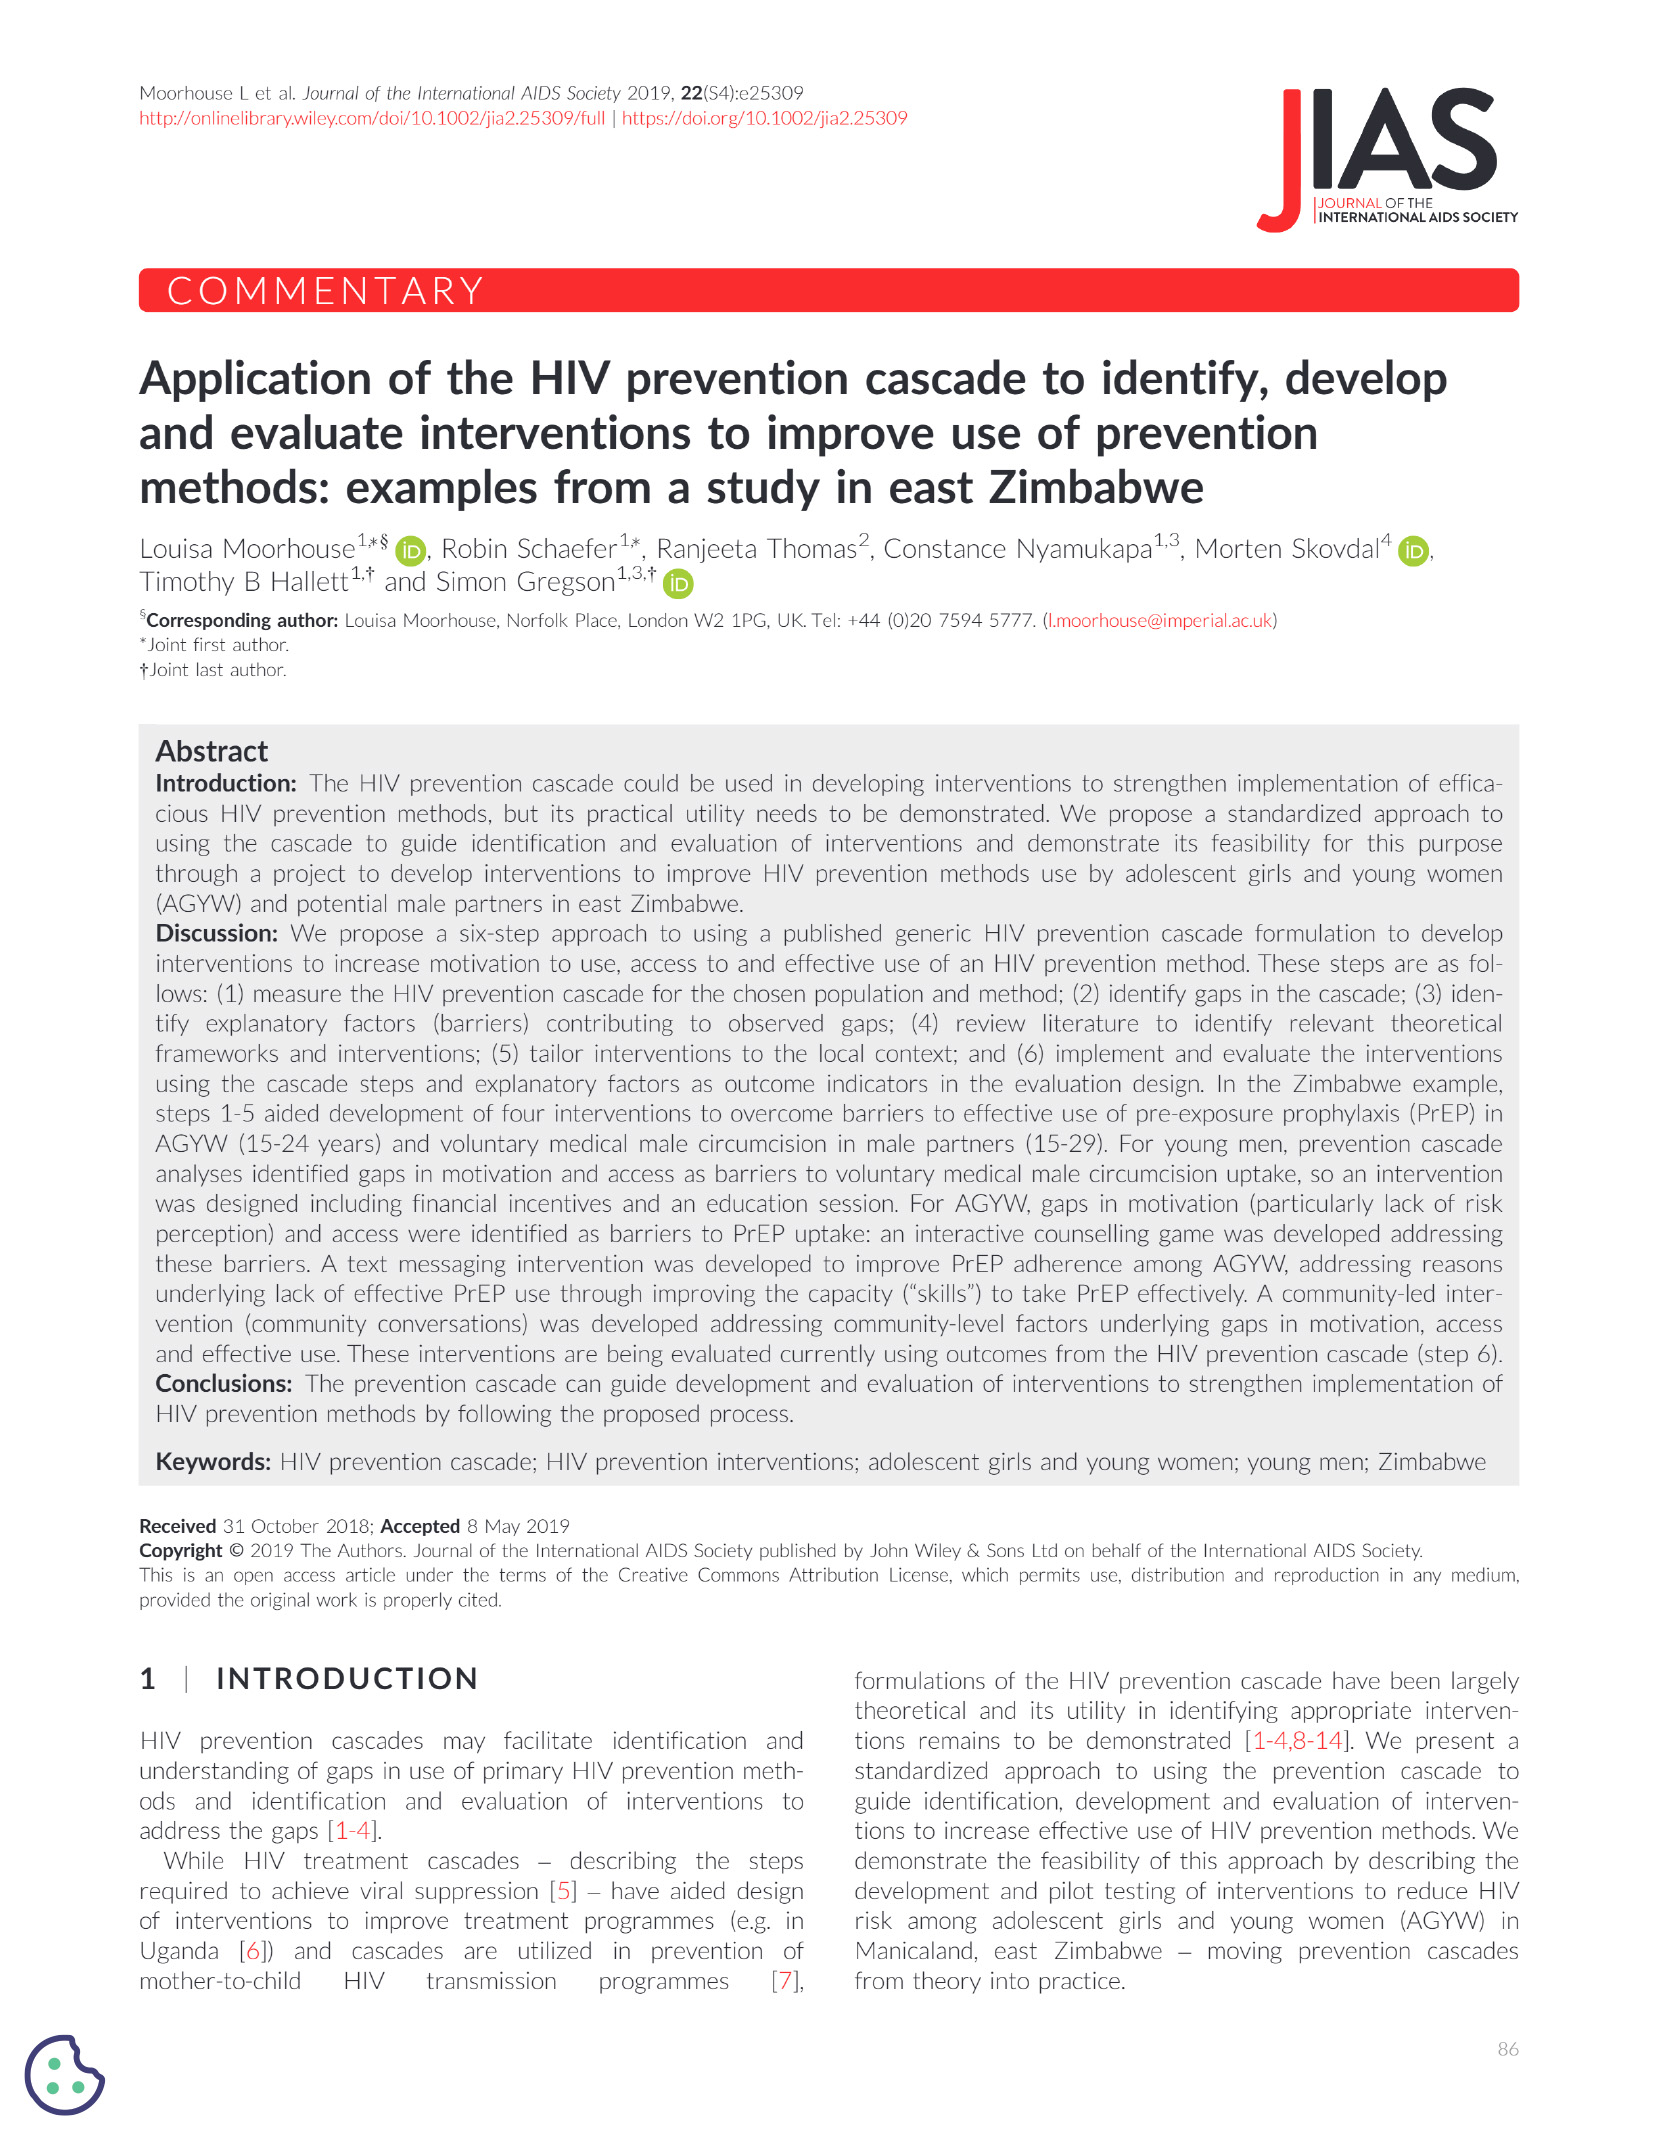 Aplicación de la cascada de prevención del VIH para identificar, desarrollar y evaluar intervenciones destinadas a mejorar el uso de los métodos de prevención: Ejemplos de un estudio en el este de Zimbabue - portada